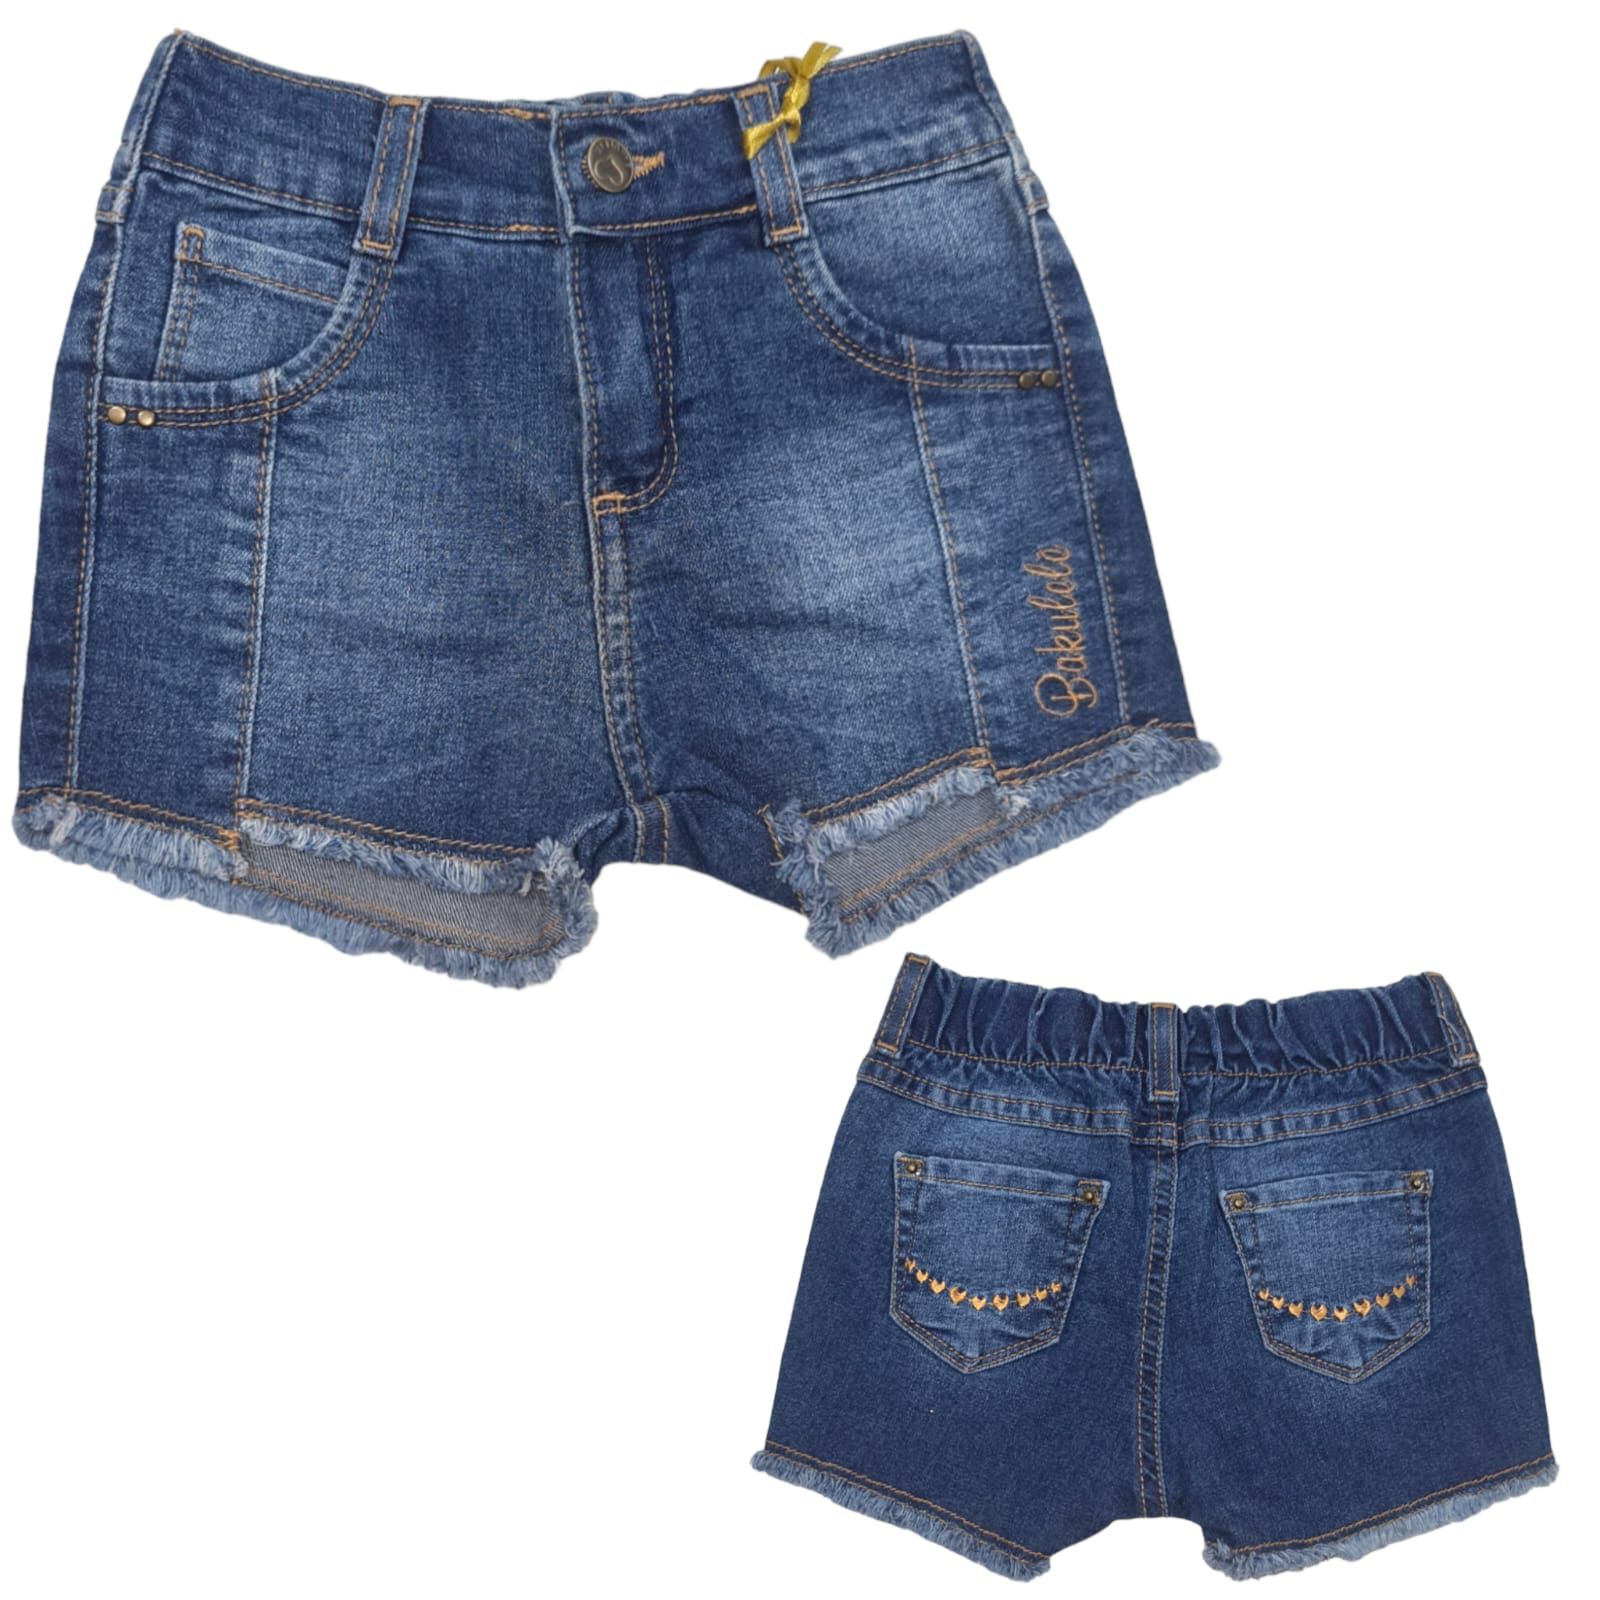 Preços baixos em Shorts Jeans Azul sem marca para mulheres